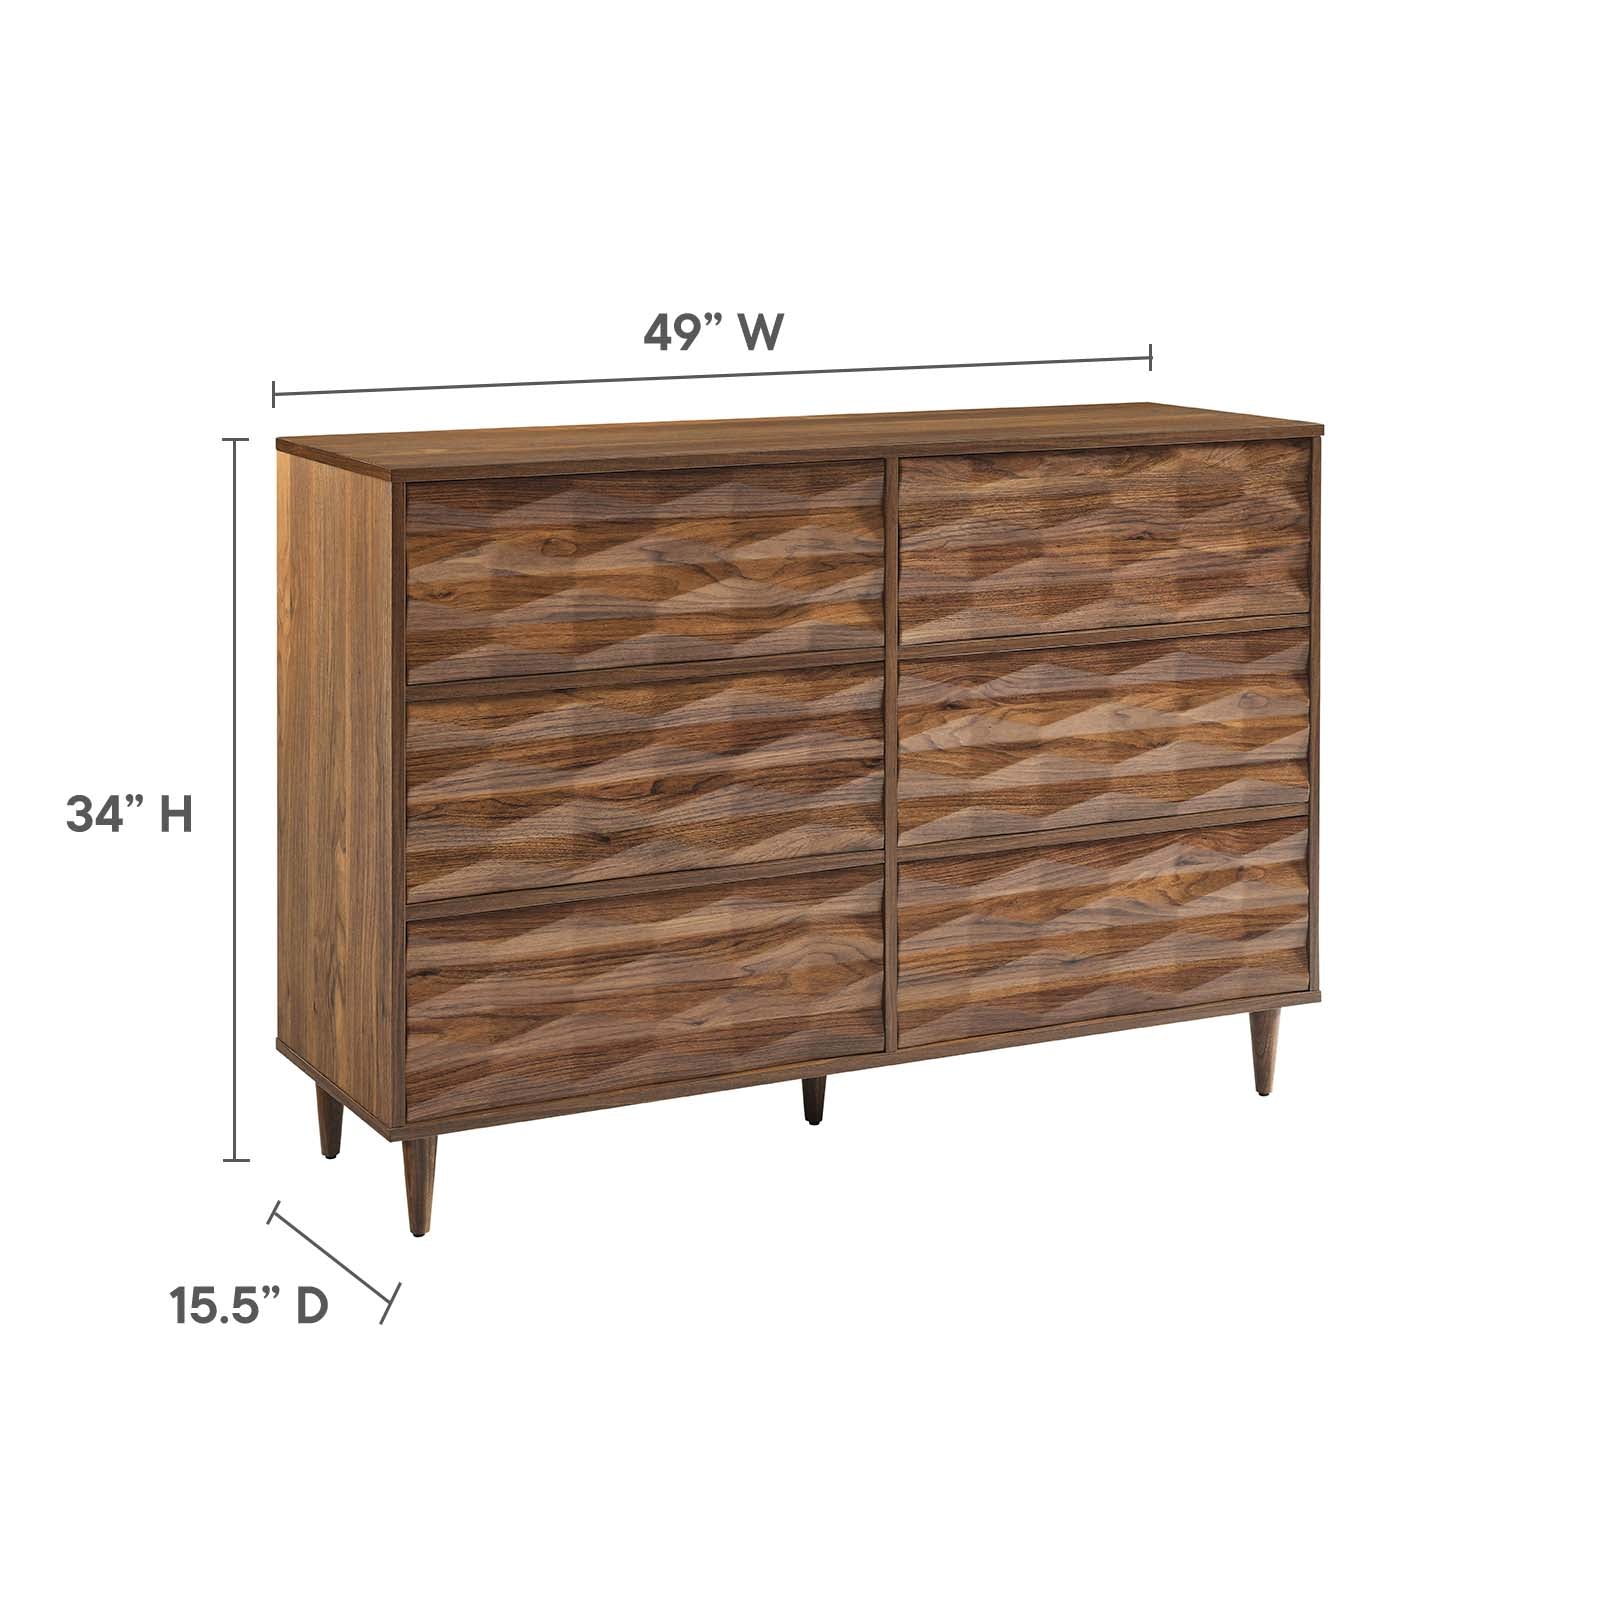 Vespera 6-Drawer Dresser - East Shore Modern Home Furnishings